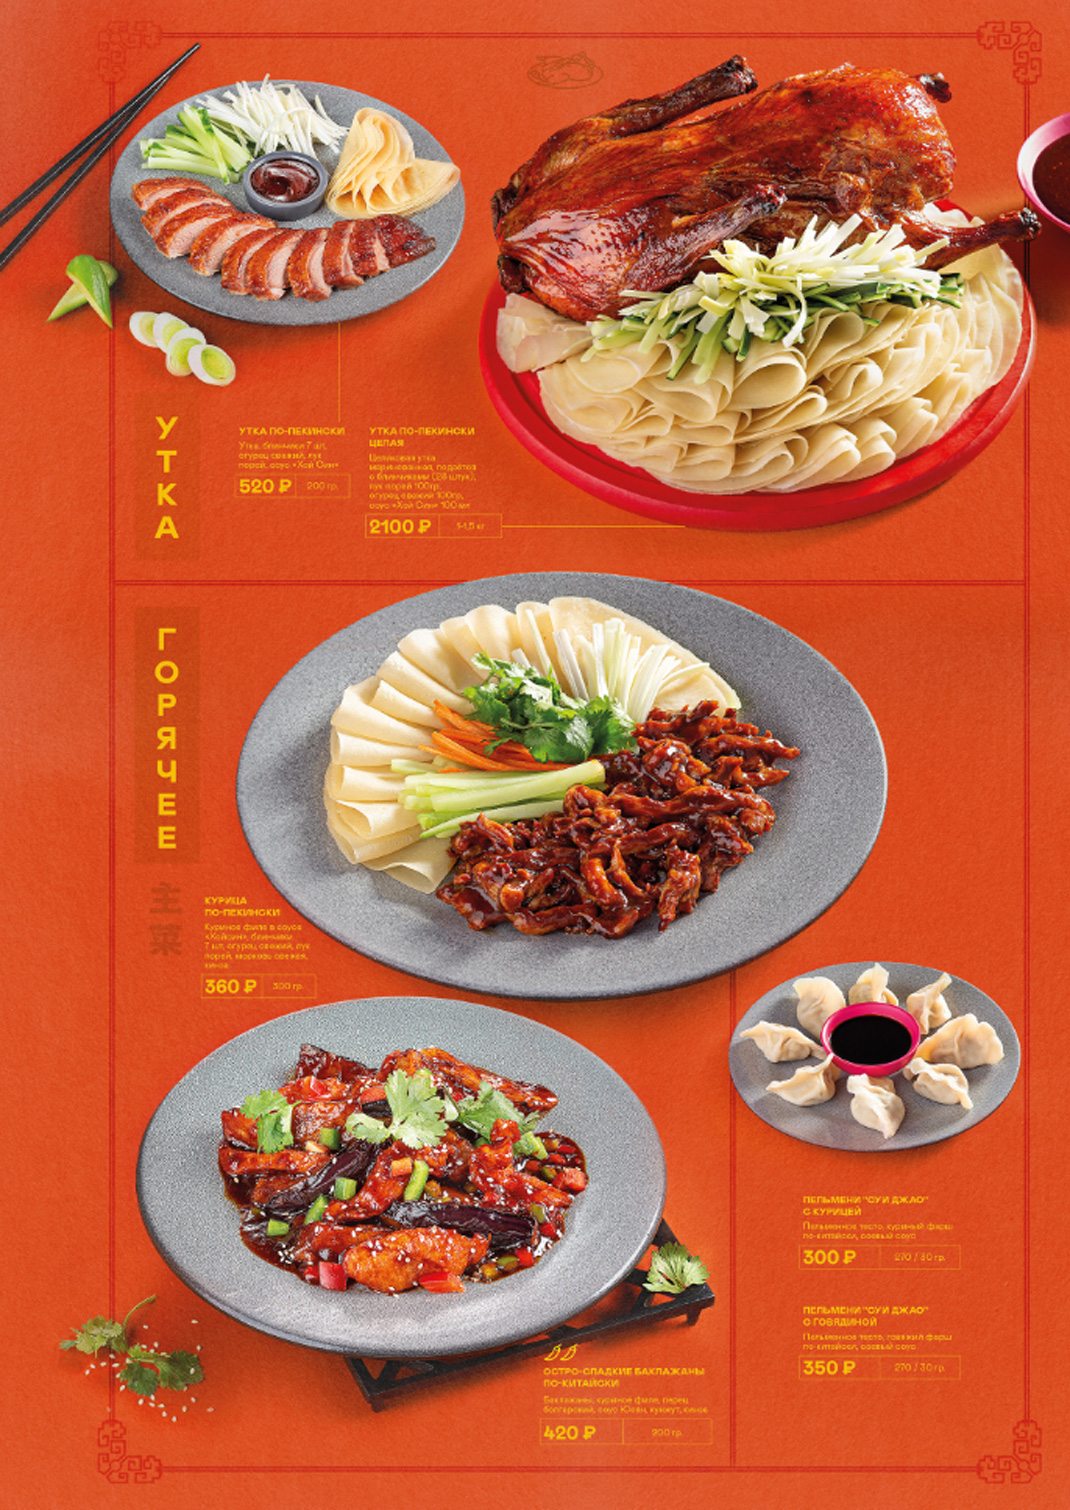 中餐厅菜单 俄罗斯 中国 菜单设计 排版设计 logo设计 vi设计 空间设计